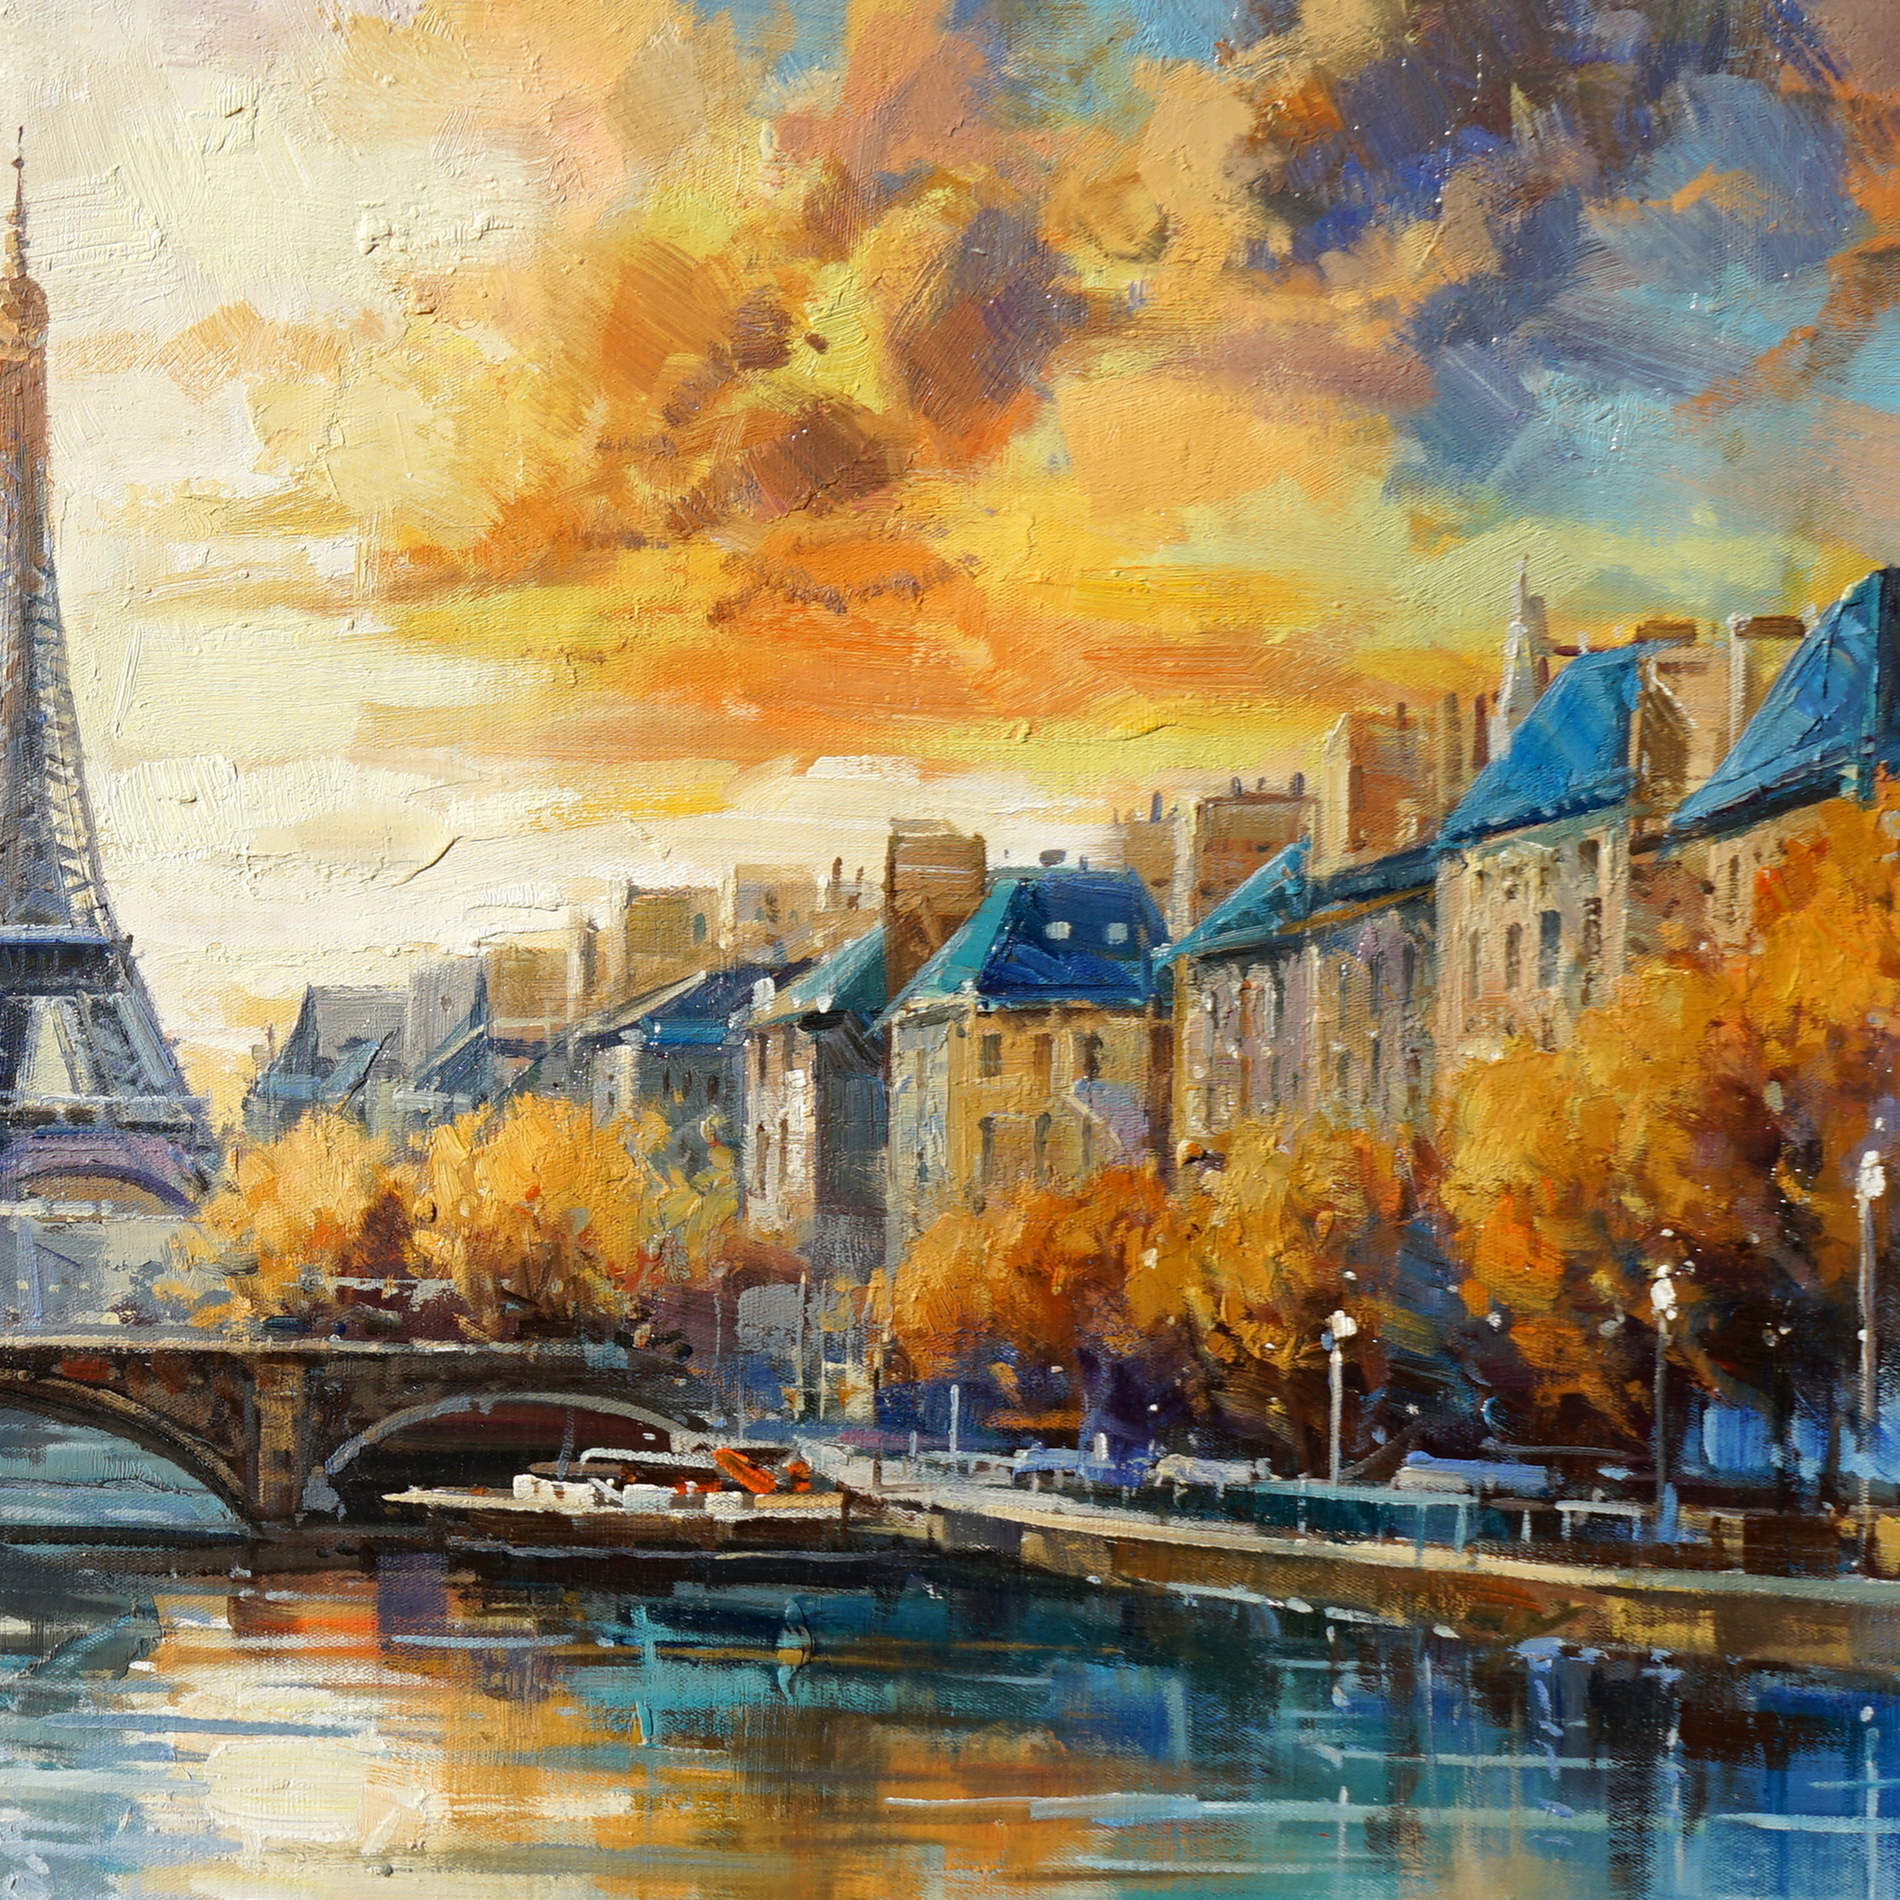 Pont de la Tour Eiffel de Paris peint à la main sur la Seine 60x120cm